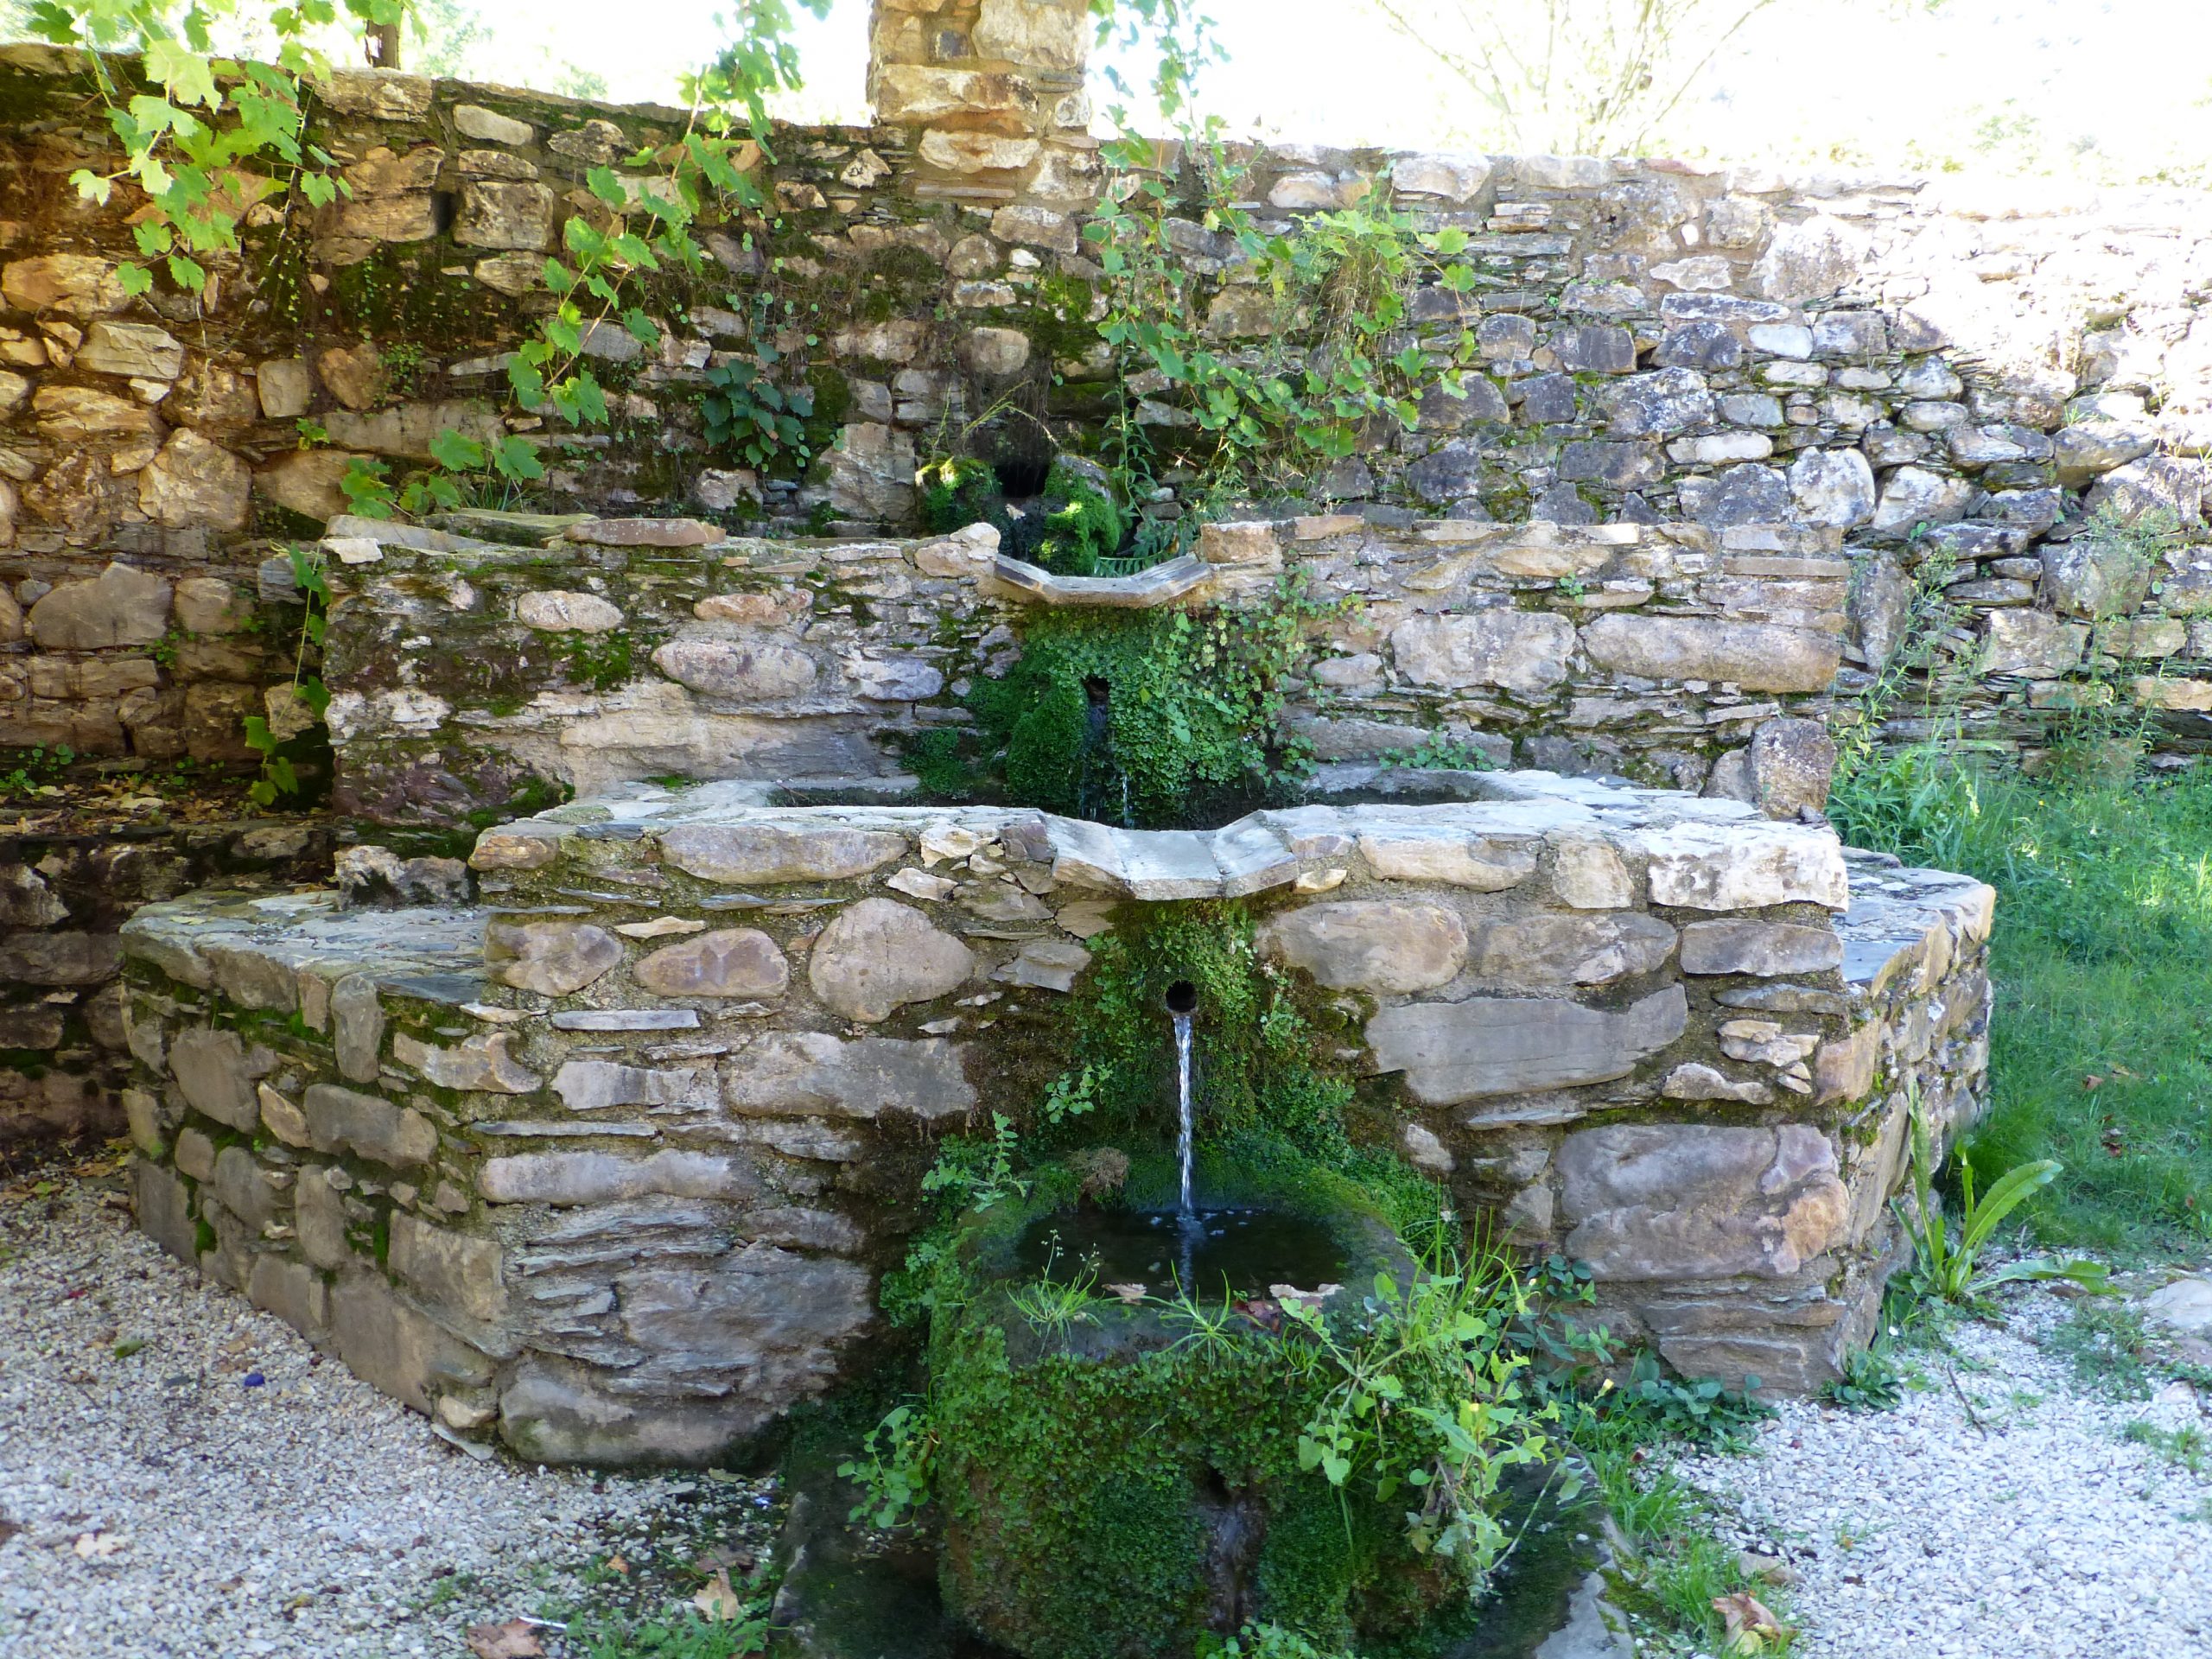 Fuente del mosteiro de xagoaza